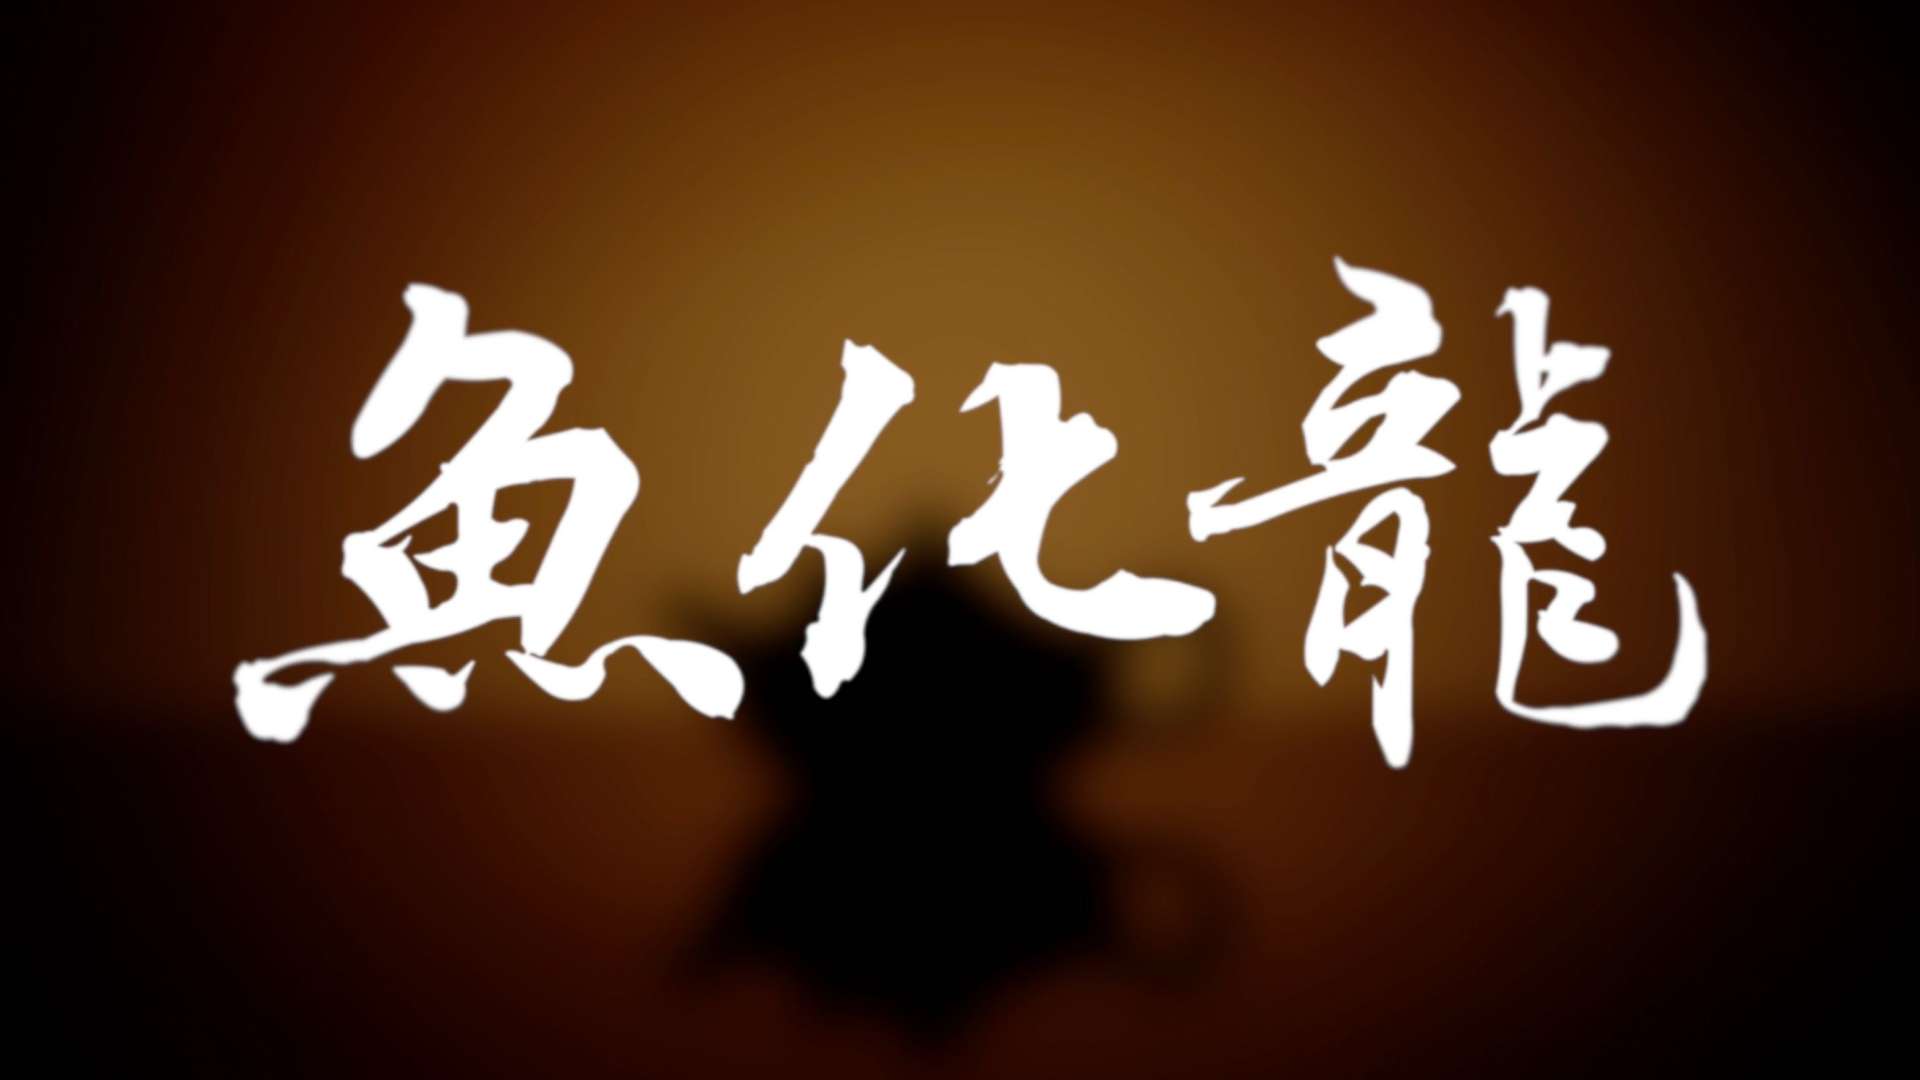 「鱼化龙」- 年迹·甲辰龙年紫砂壶产品片-DIRCUT -非遗大师吕俊杰